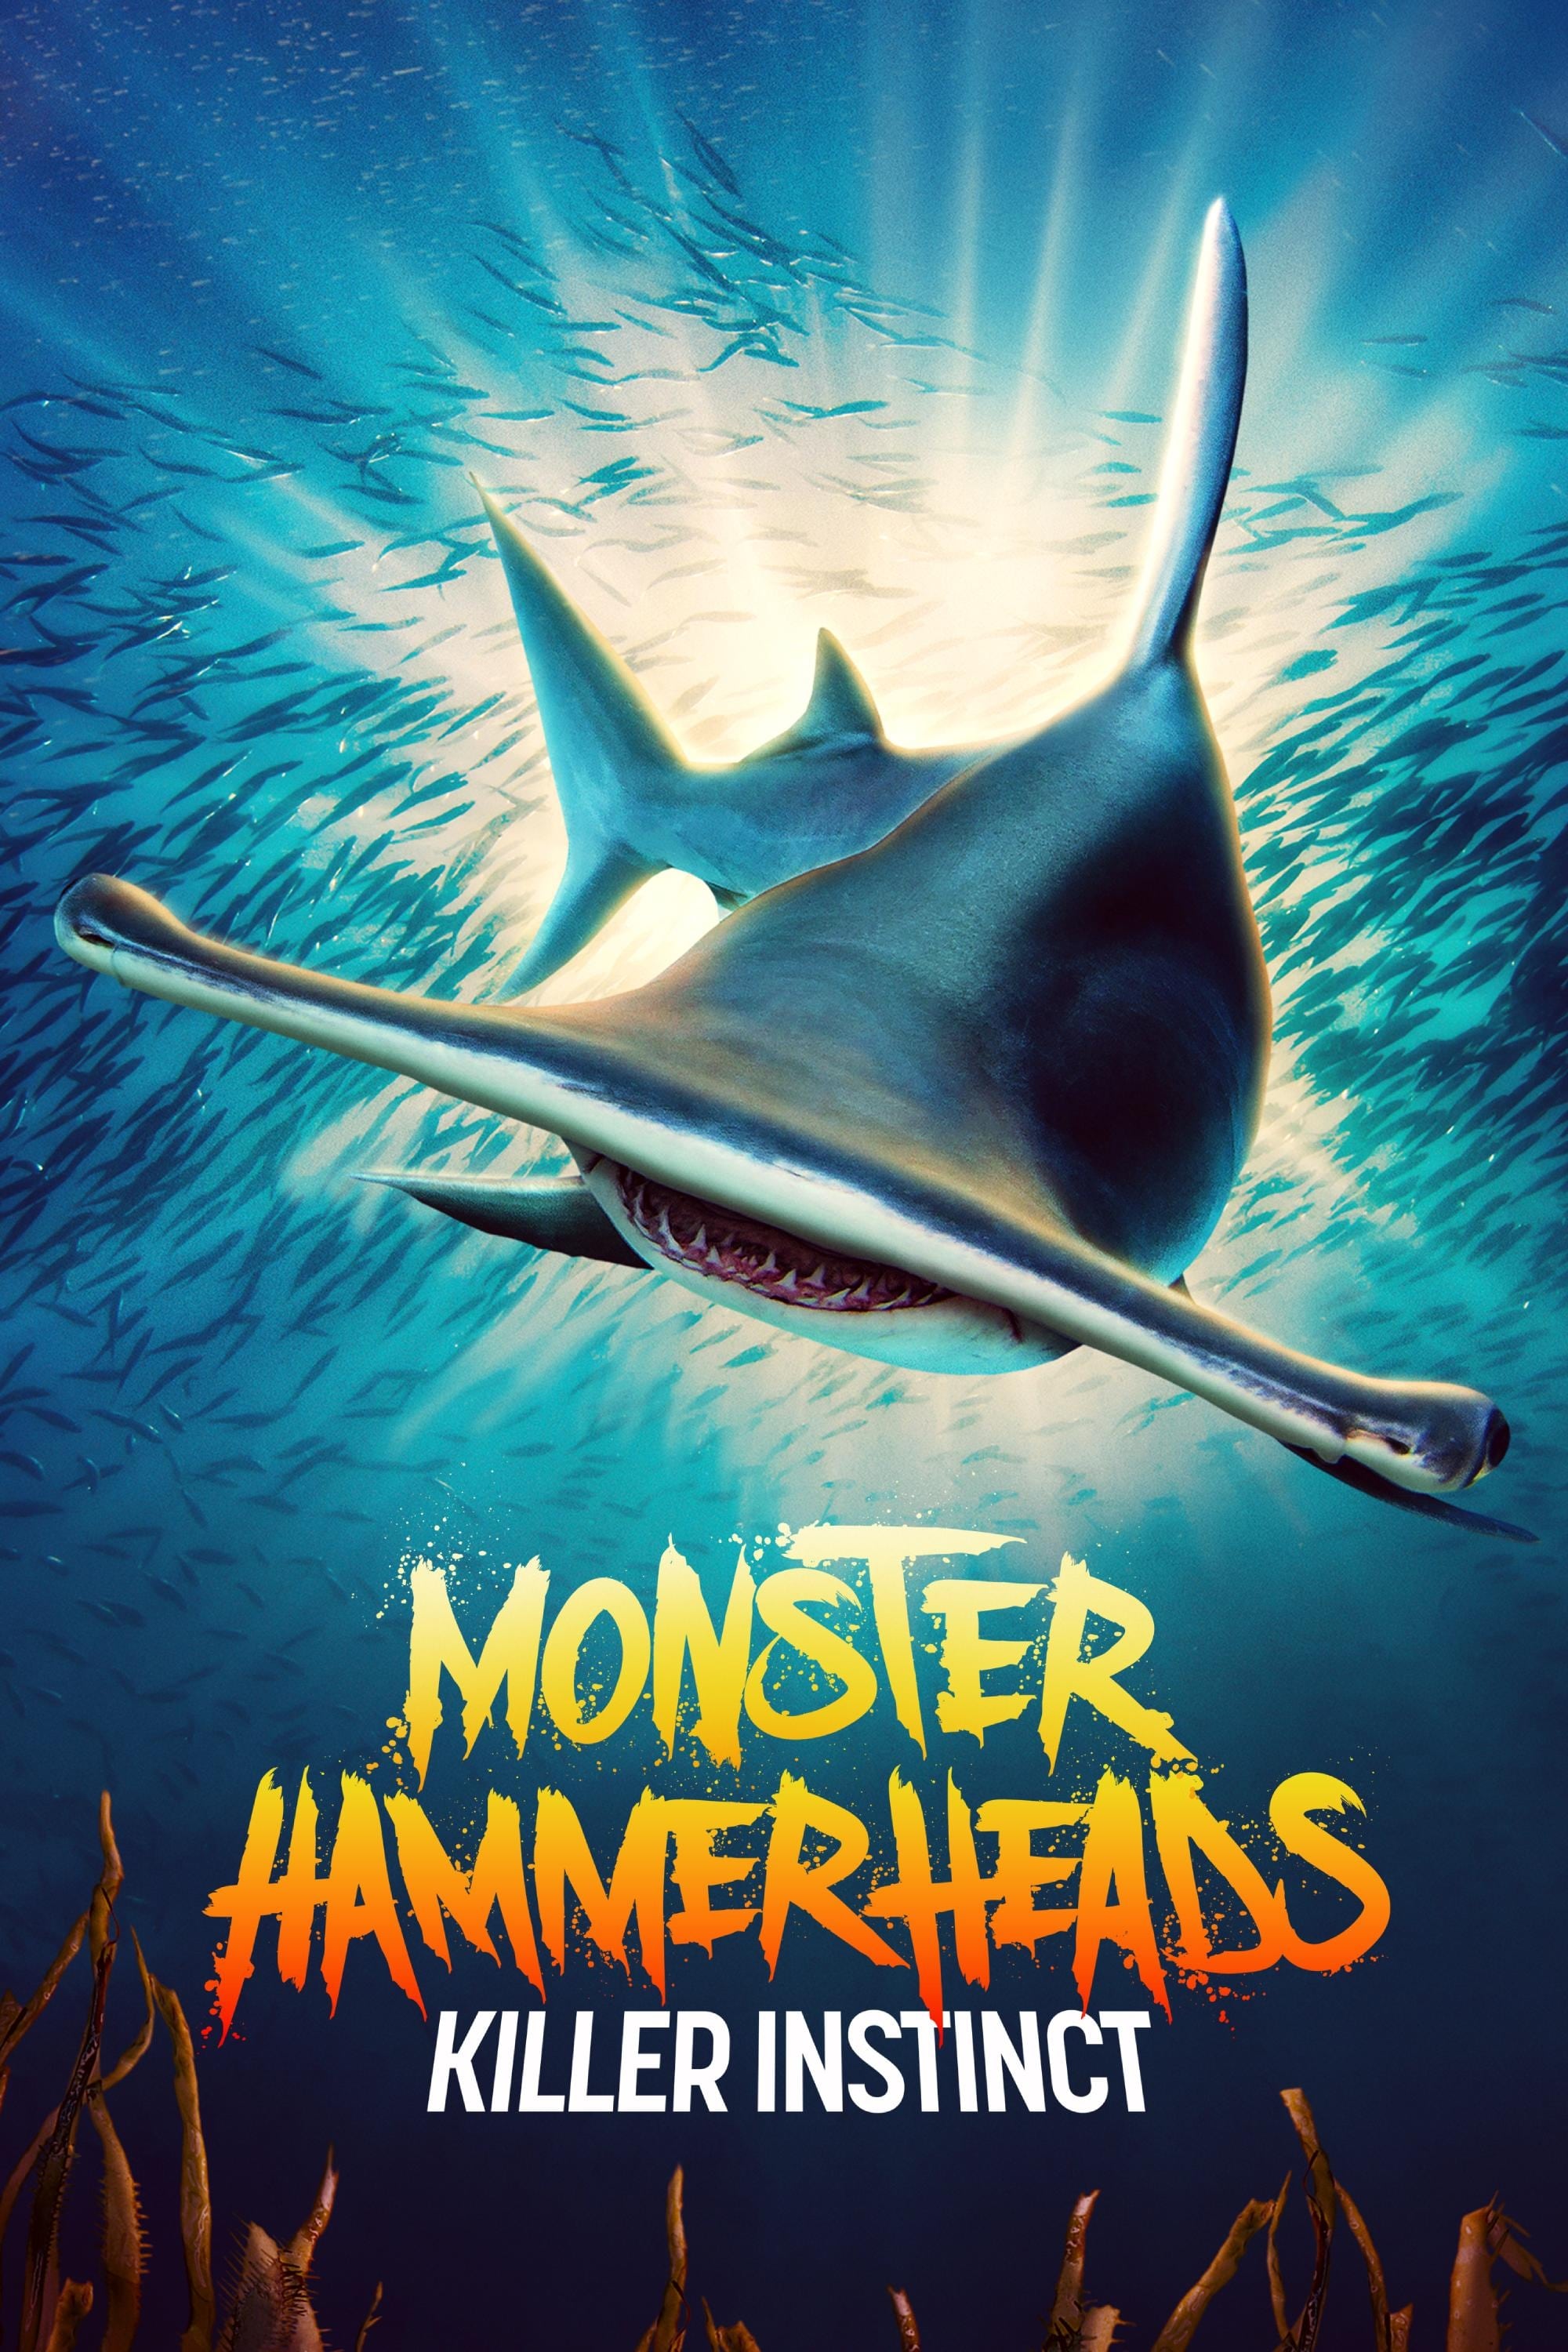 Monster Hammerheads